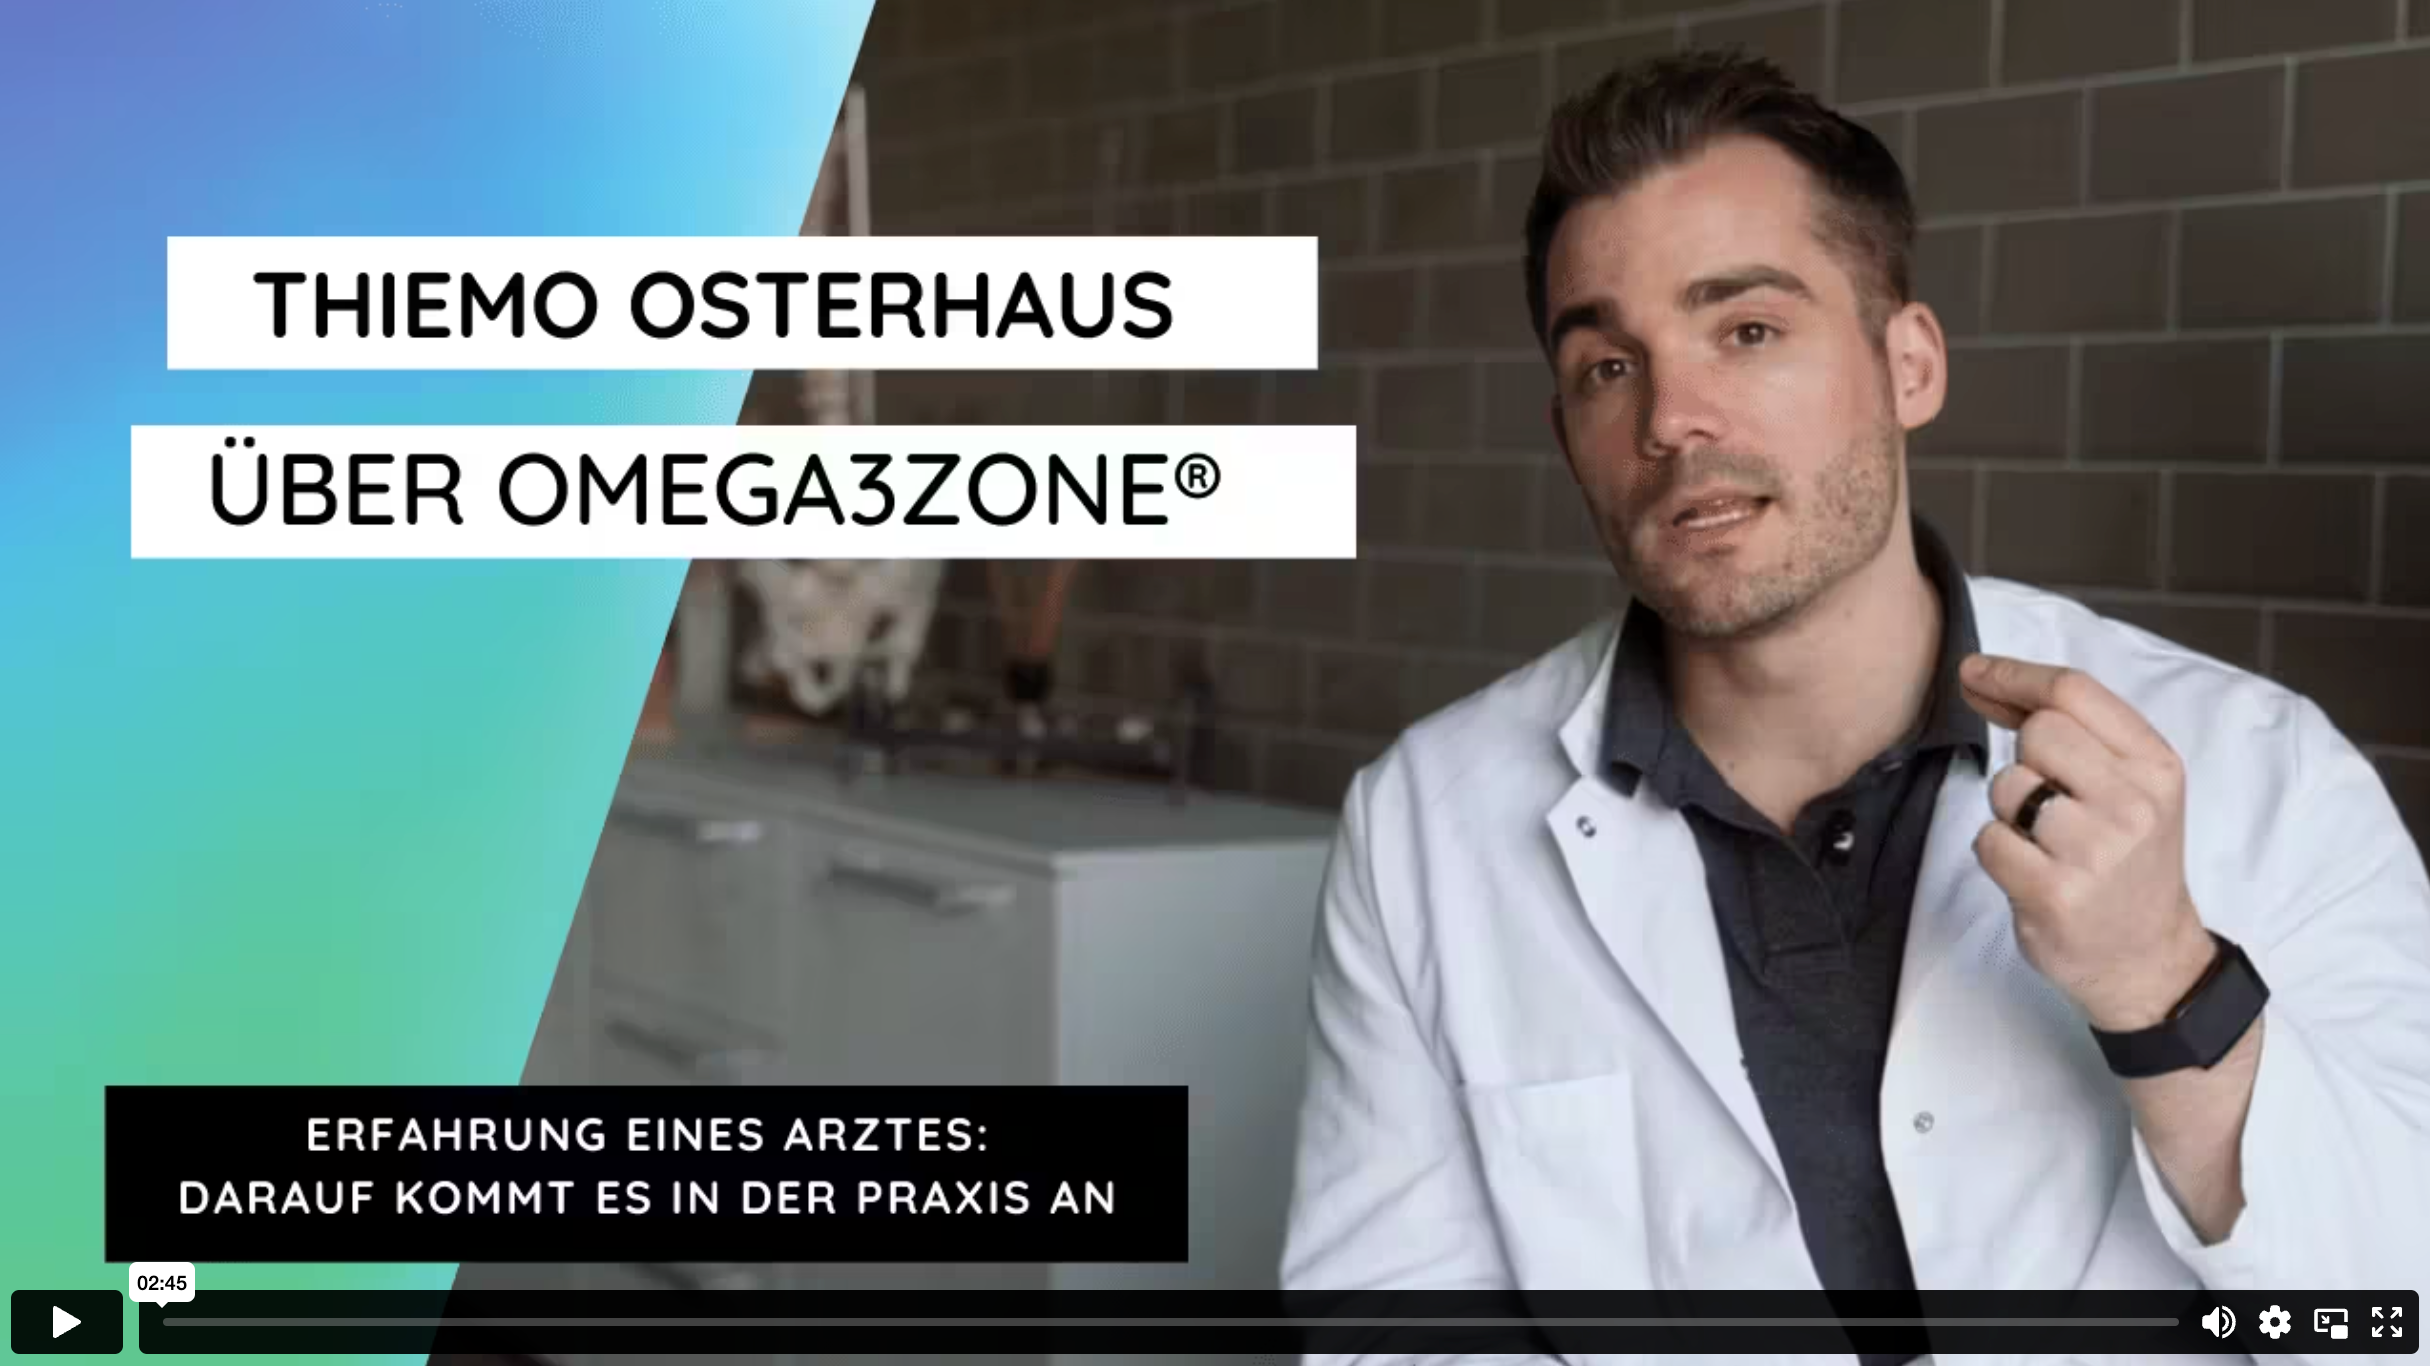 Ein Arzt im Laborkittel mit dem Namen Thiemo Osterhaus berichtet über omega3zone.